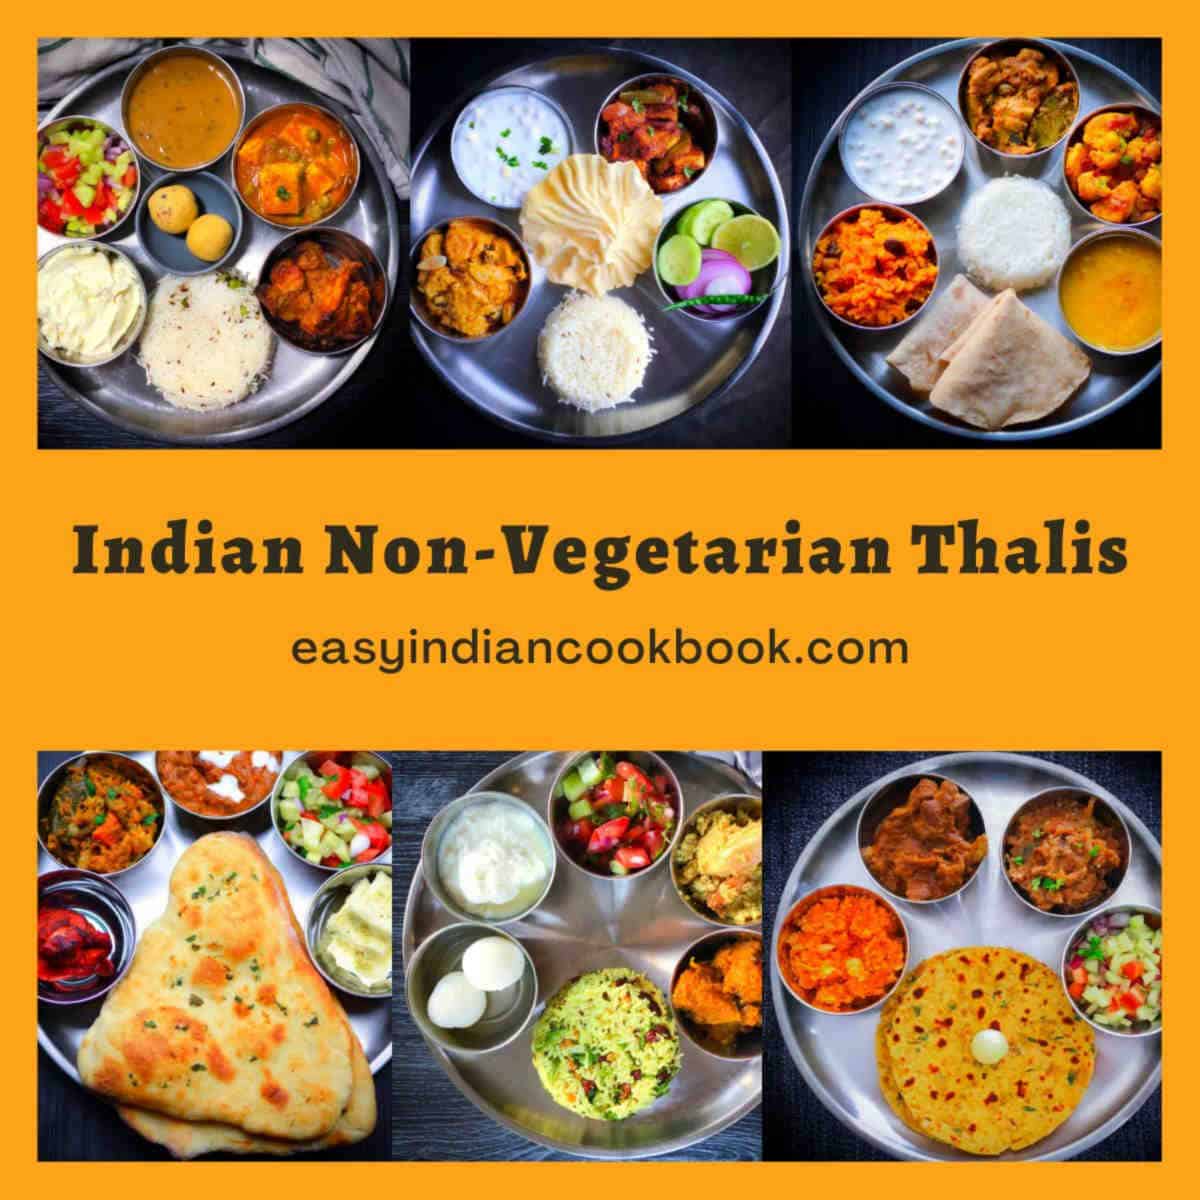 Indian non-vegetarial thalis.